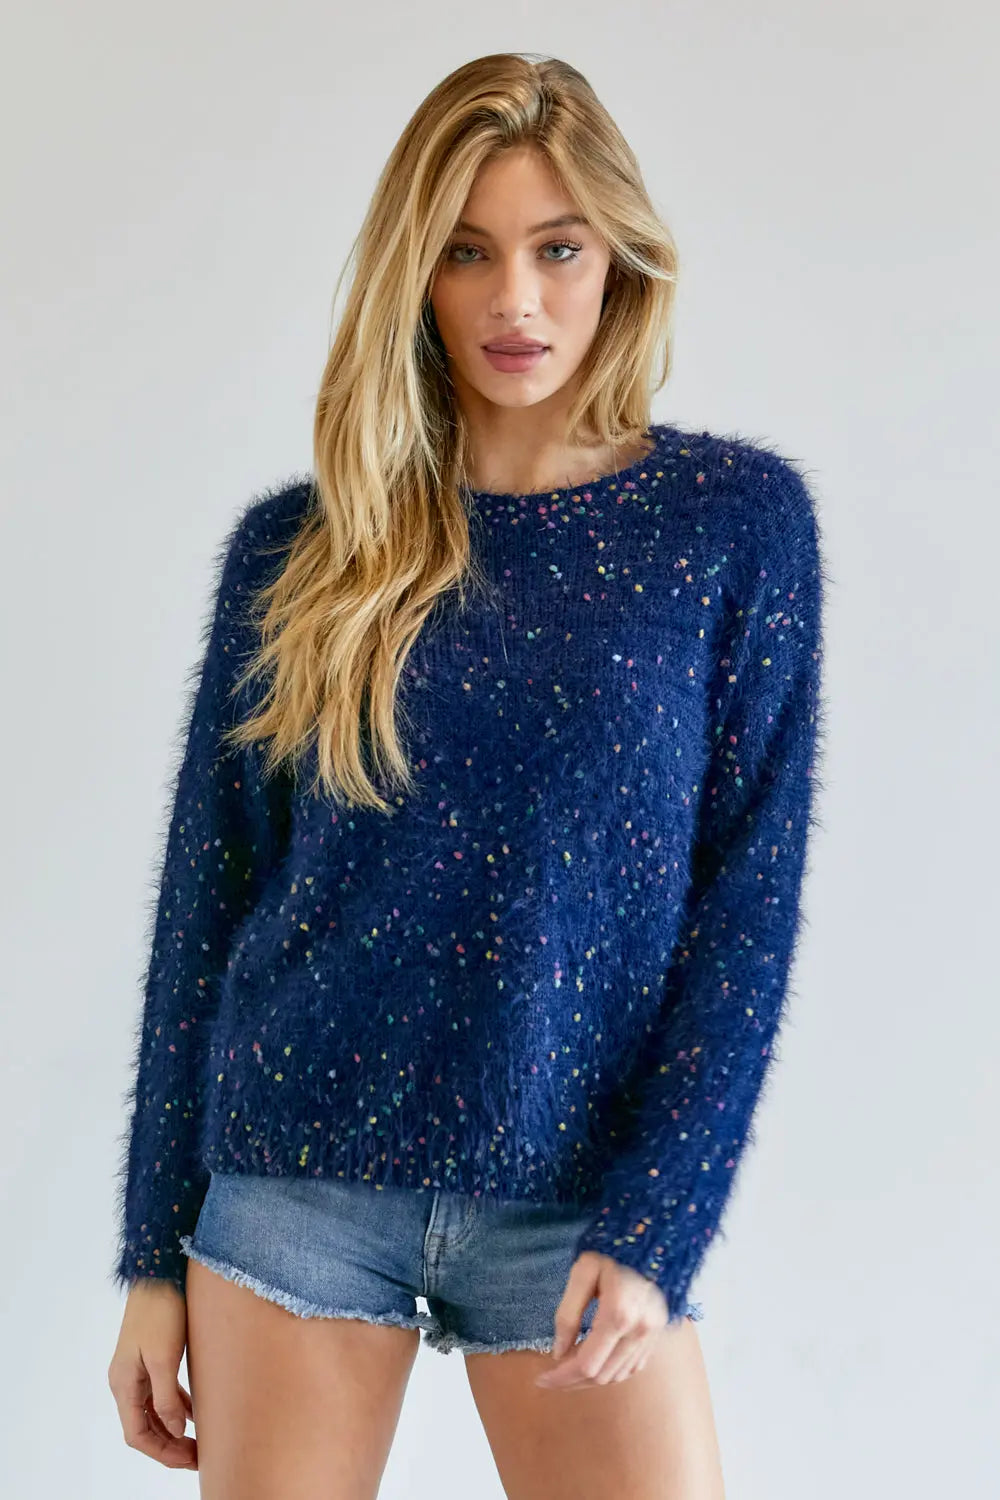 Cute Multi Color Polak Dot Sweater Sunny EvE Fashion